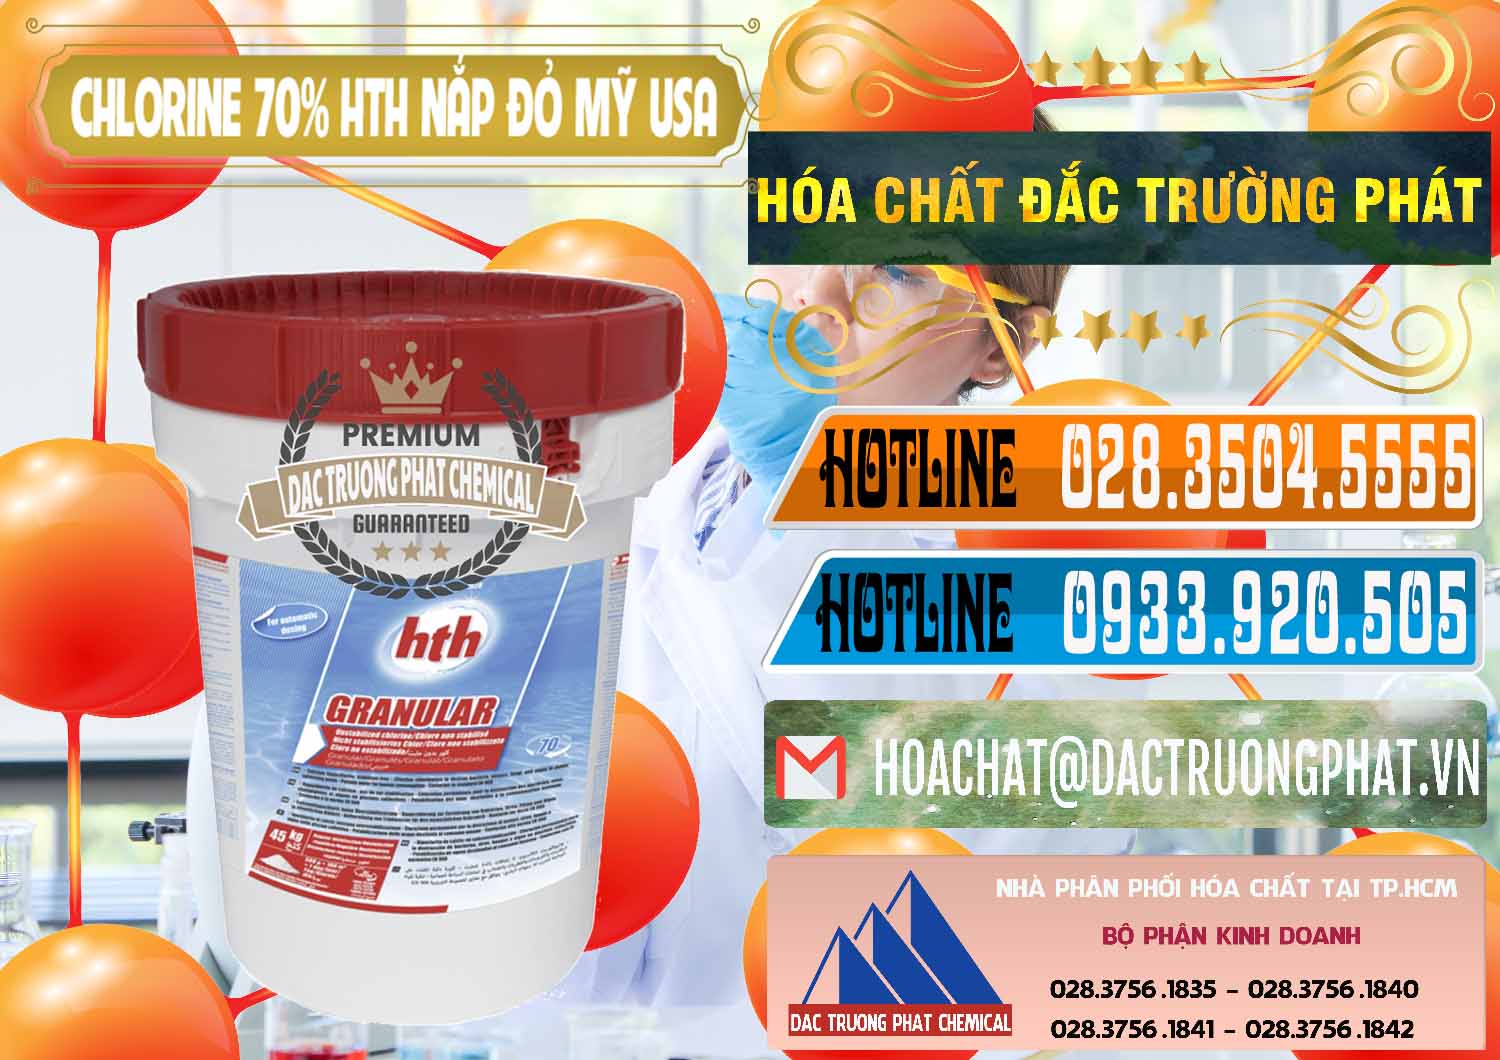 Chuyên cung cấp và bán Clorin – Chlorine 70% HTH Nắp Đỏ Mỹ Usa - 0244 - Nhà phân phối ( nhập khẩu ) hóa chất tại TP.HCM - stmp.net